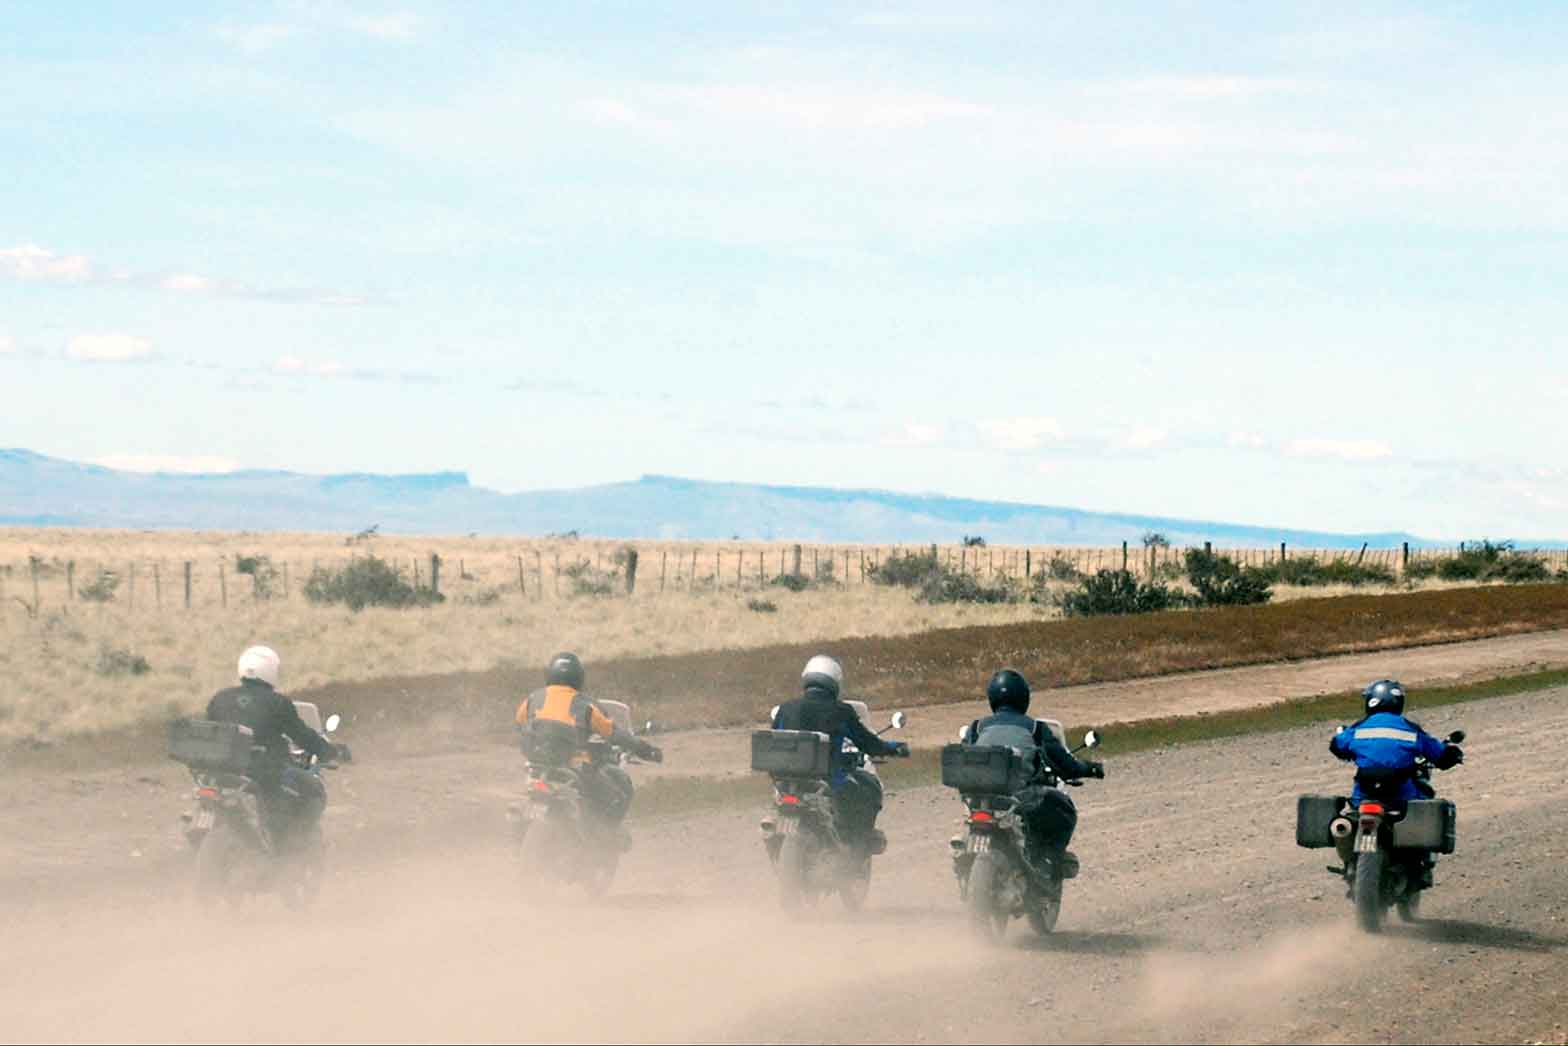 Five riders leaving Patagonia